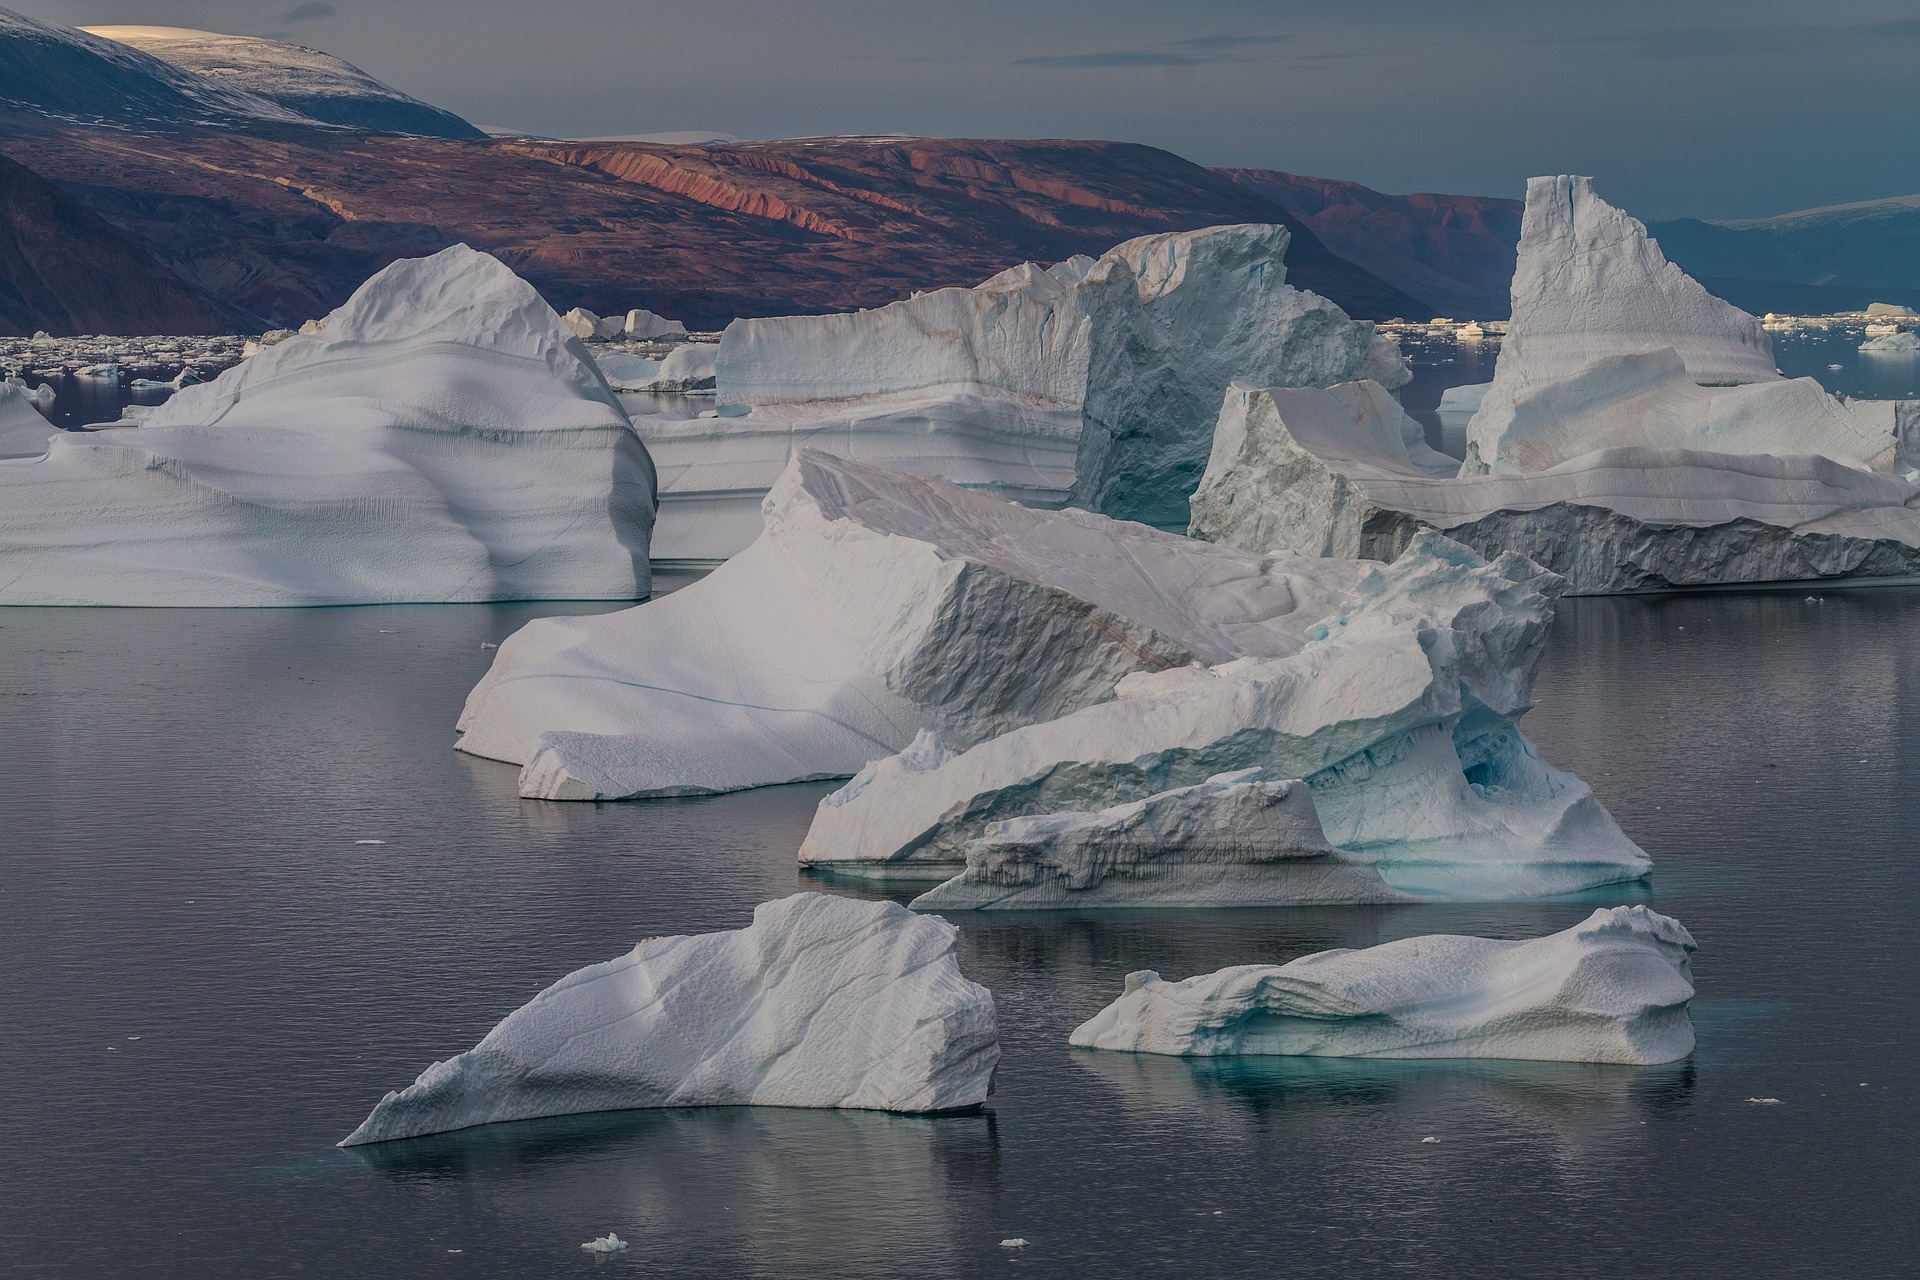 Schwimmendes Eis in Grönland. Bild: pixabay/mariohagen